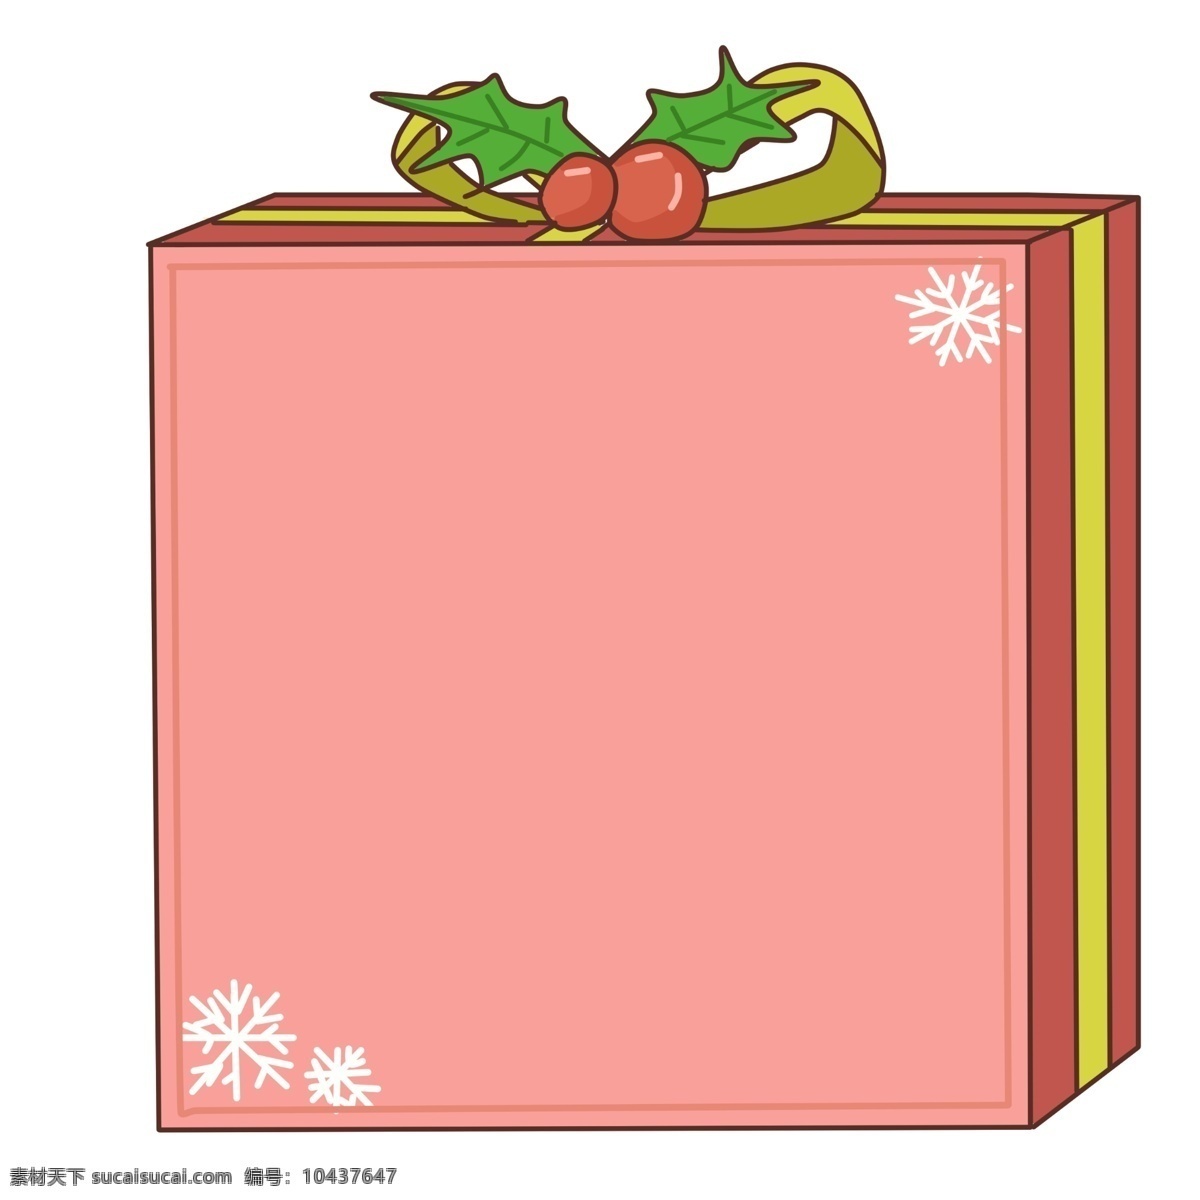 圣诞节 礼盒 边框 插画 红色的圣诞球 绿色的叶子 黄色的蝴蝶结 白色的雪花 红色